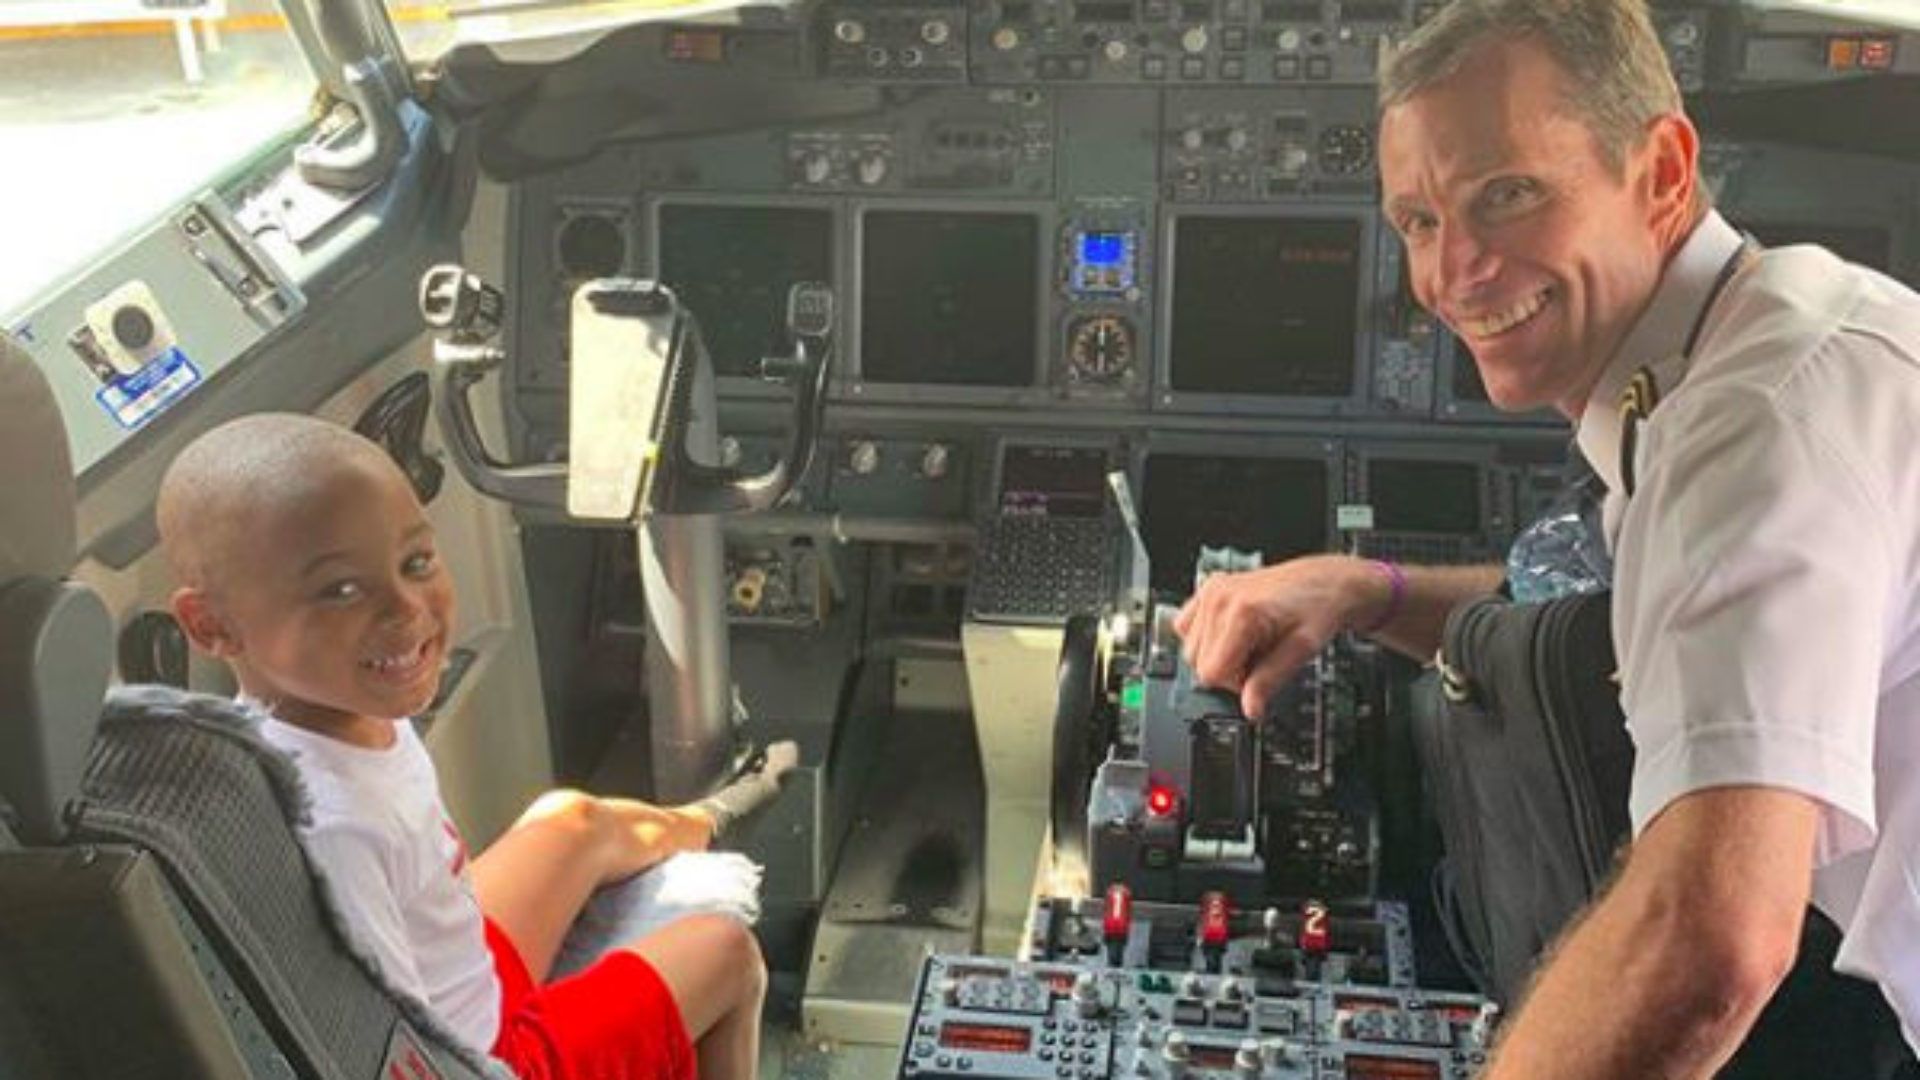 Aksi Anak 4 Tahun di Pesawat Ini Dianggap 'Heroik', Videonya Lucu untuk Ditonton!